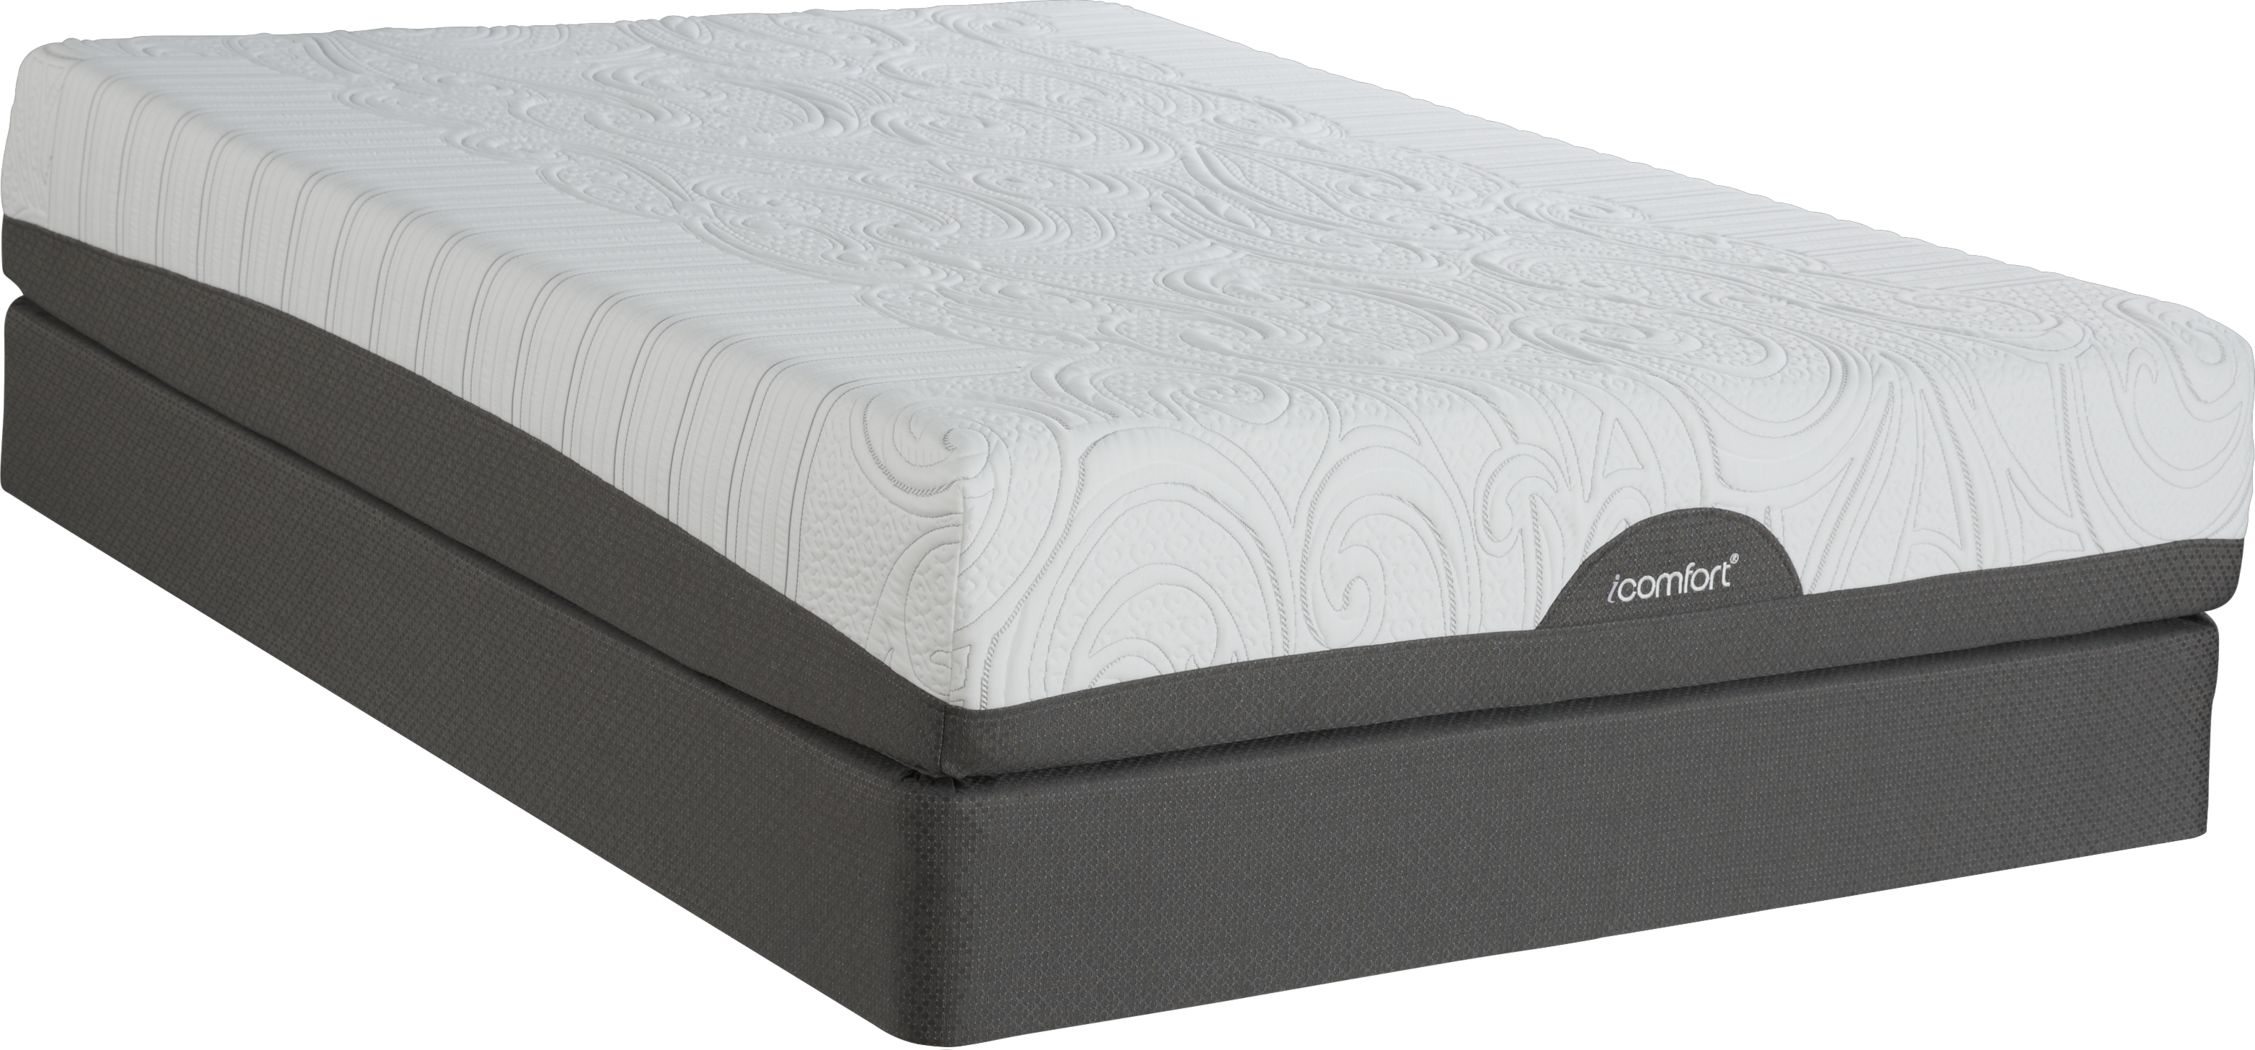 icomfort queen mattress sale